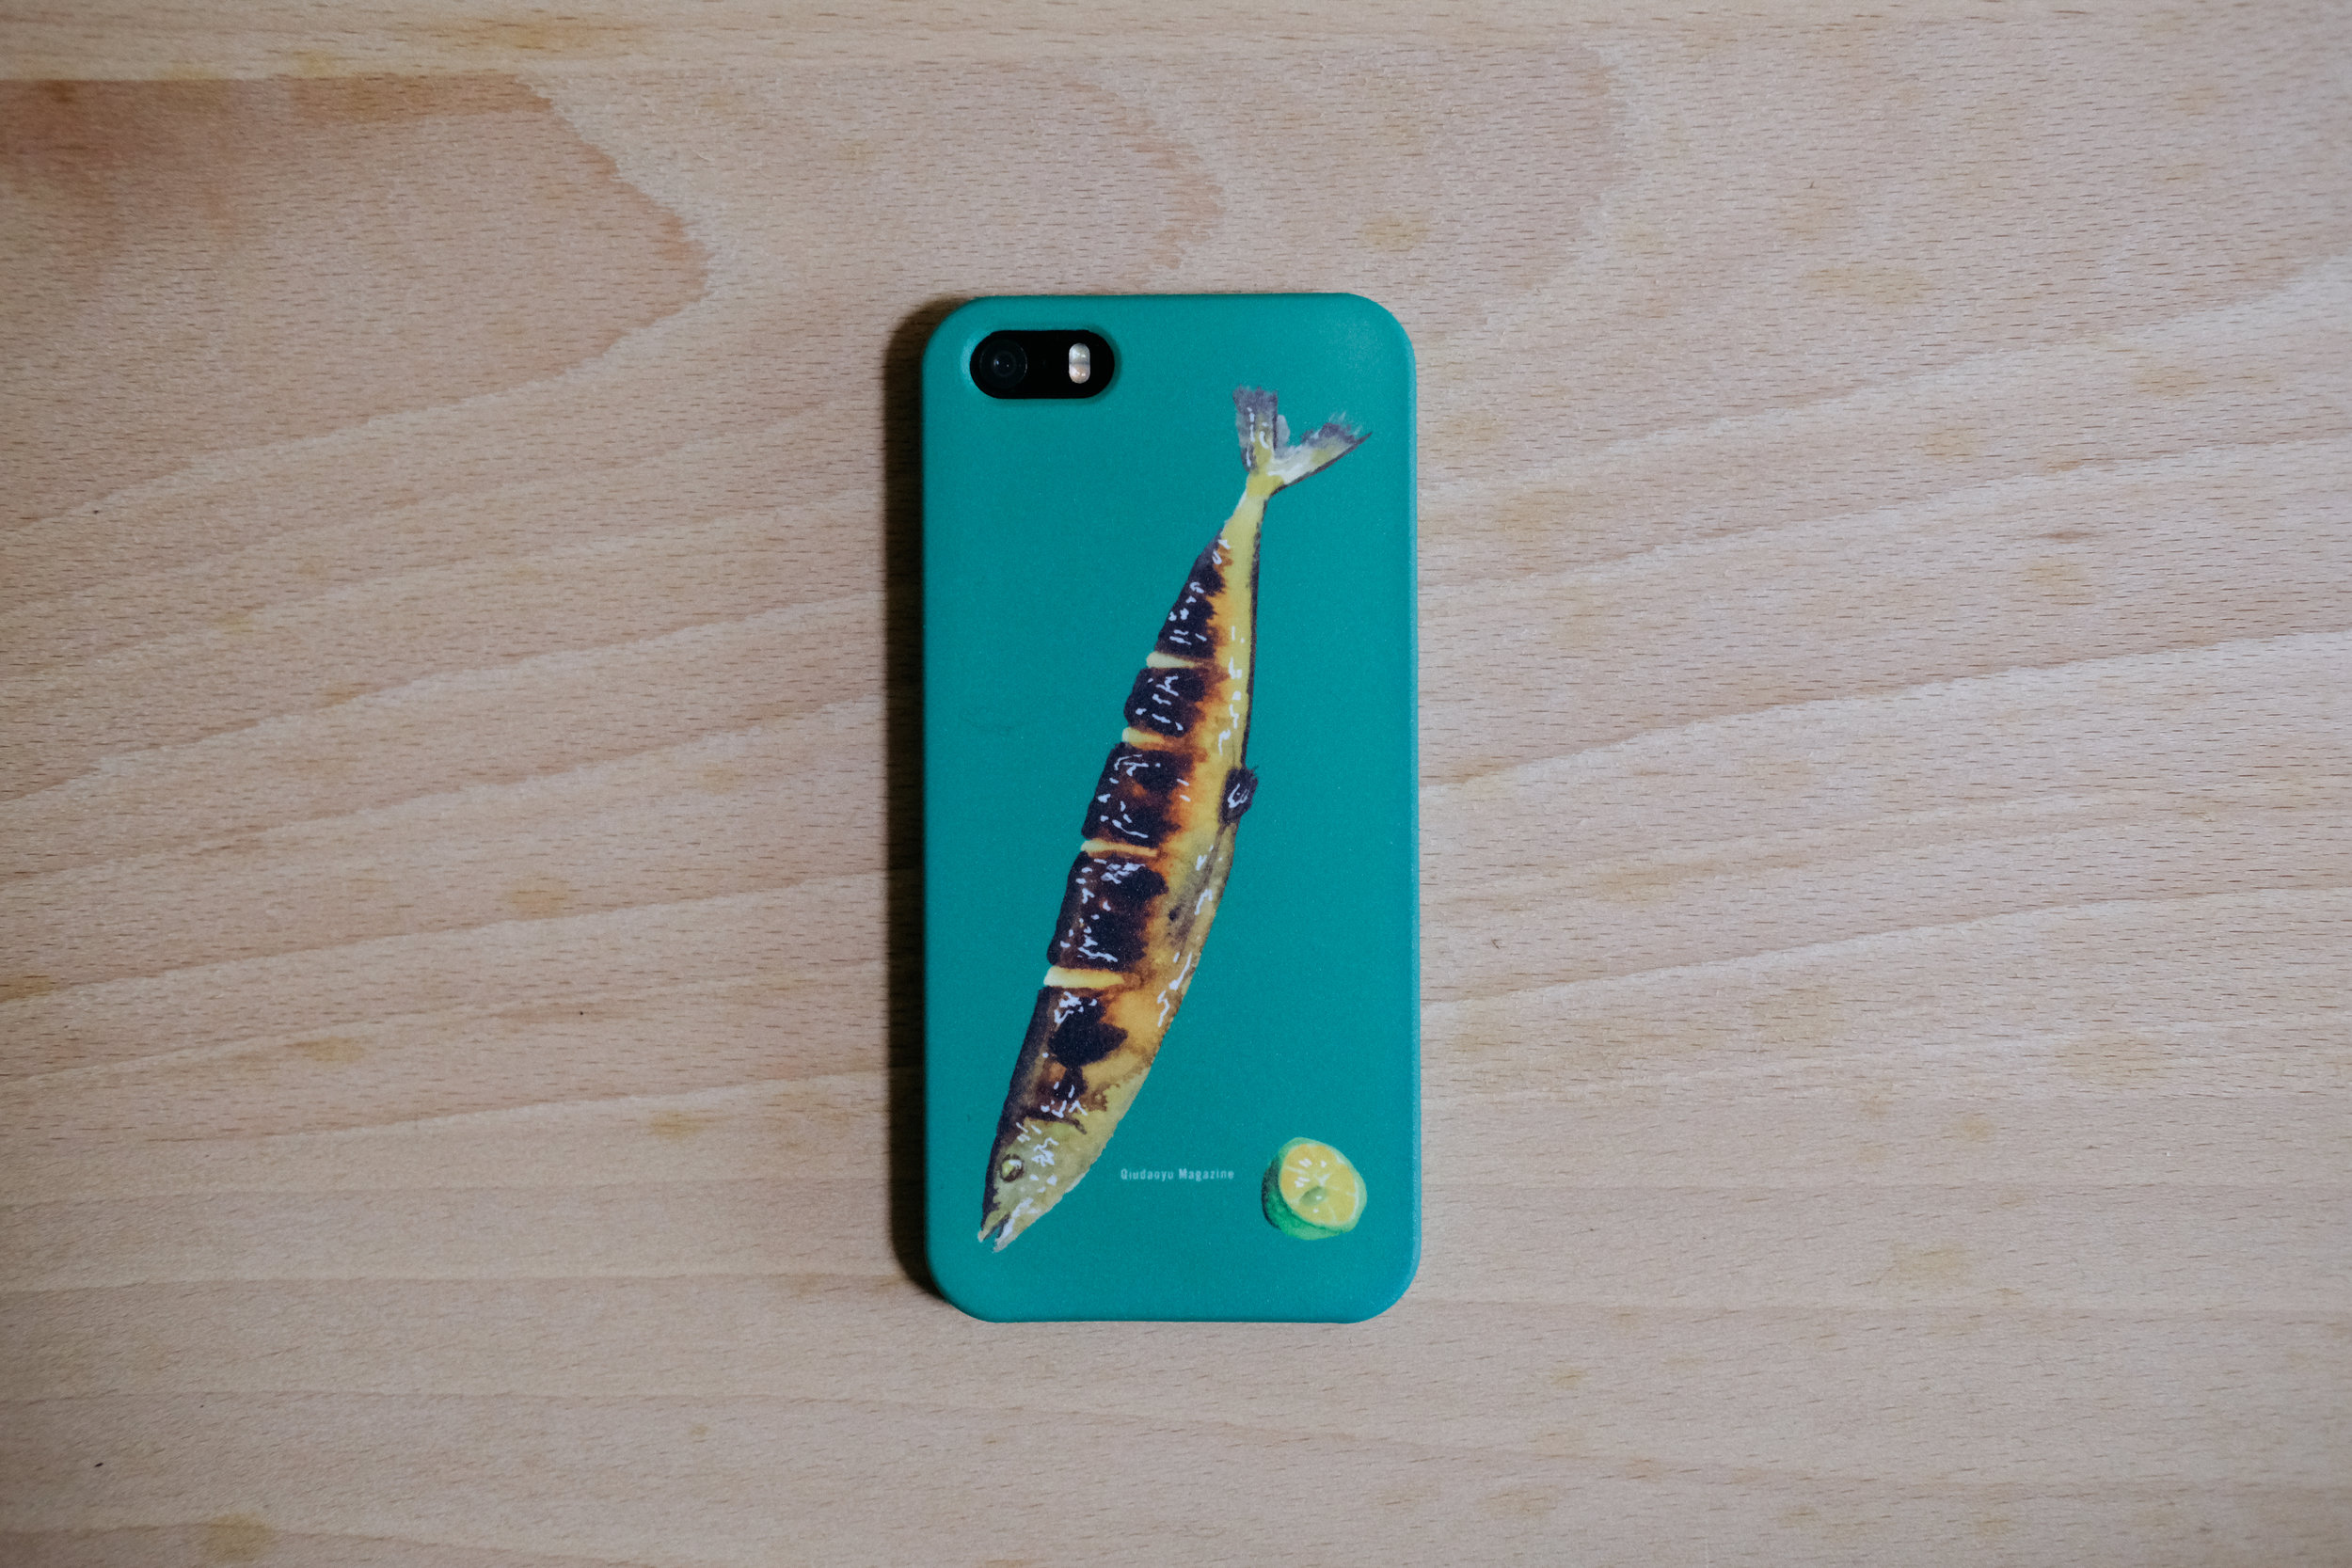  日本文化誌《秋刀魚》x wearPractice 週年紀念聯名款手機殼  插圖繪畫  DESIGN: 黃子源 